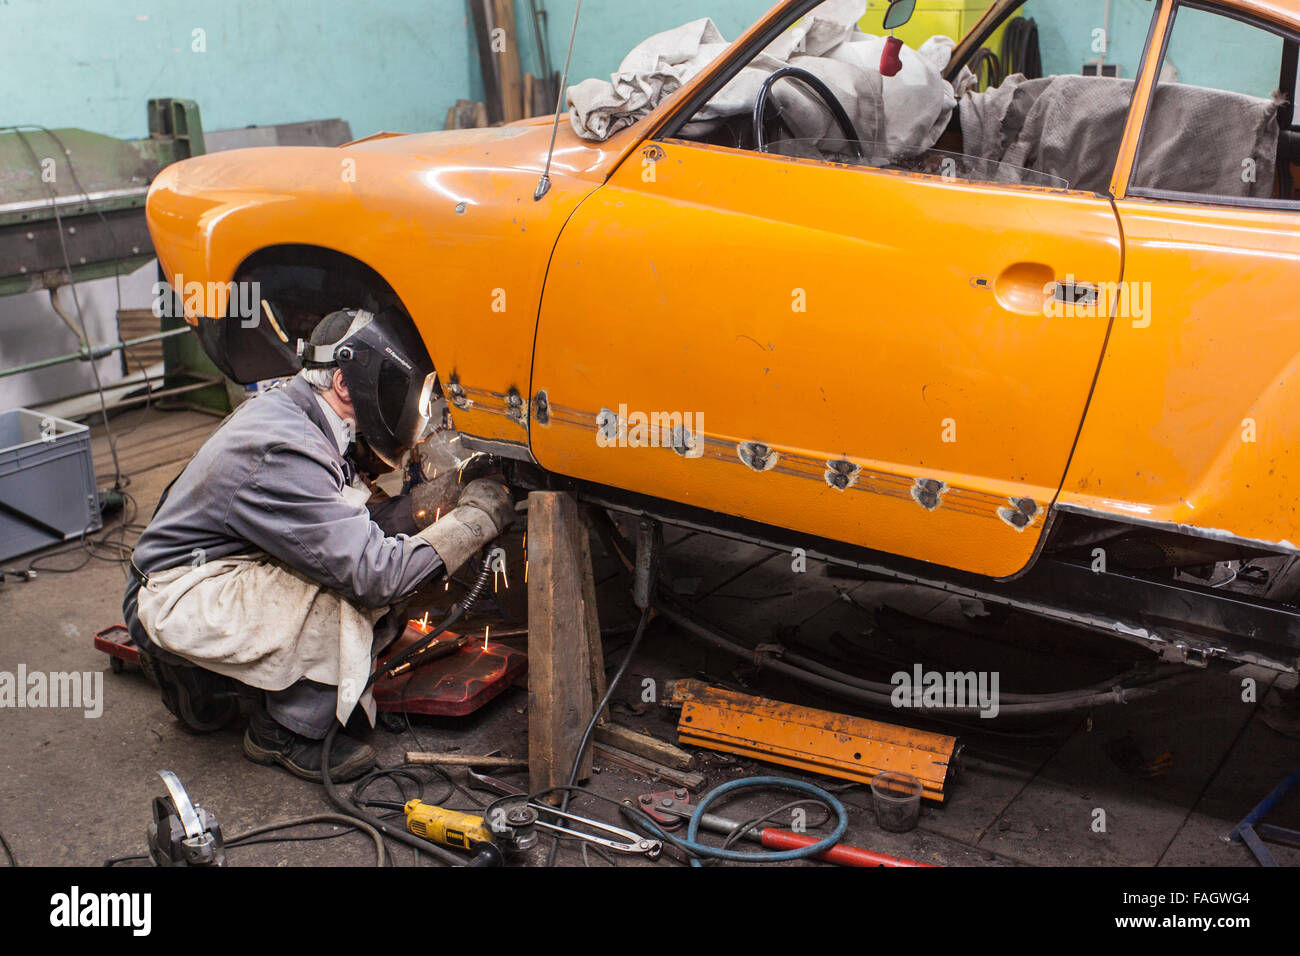 Karosseriebauer stellt ein Oldtimer VW Karmann Ghia. Schweißarbeiten an der Karosserie des Fahrzeugs. Stockfoto